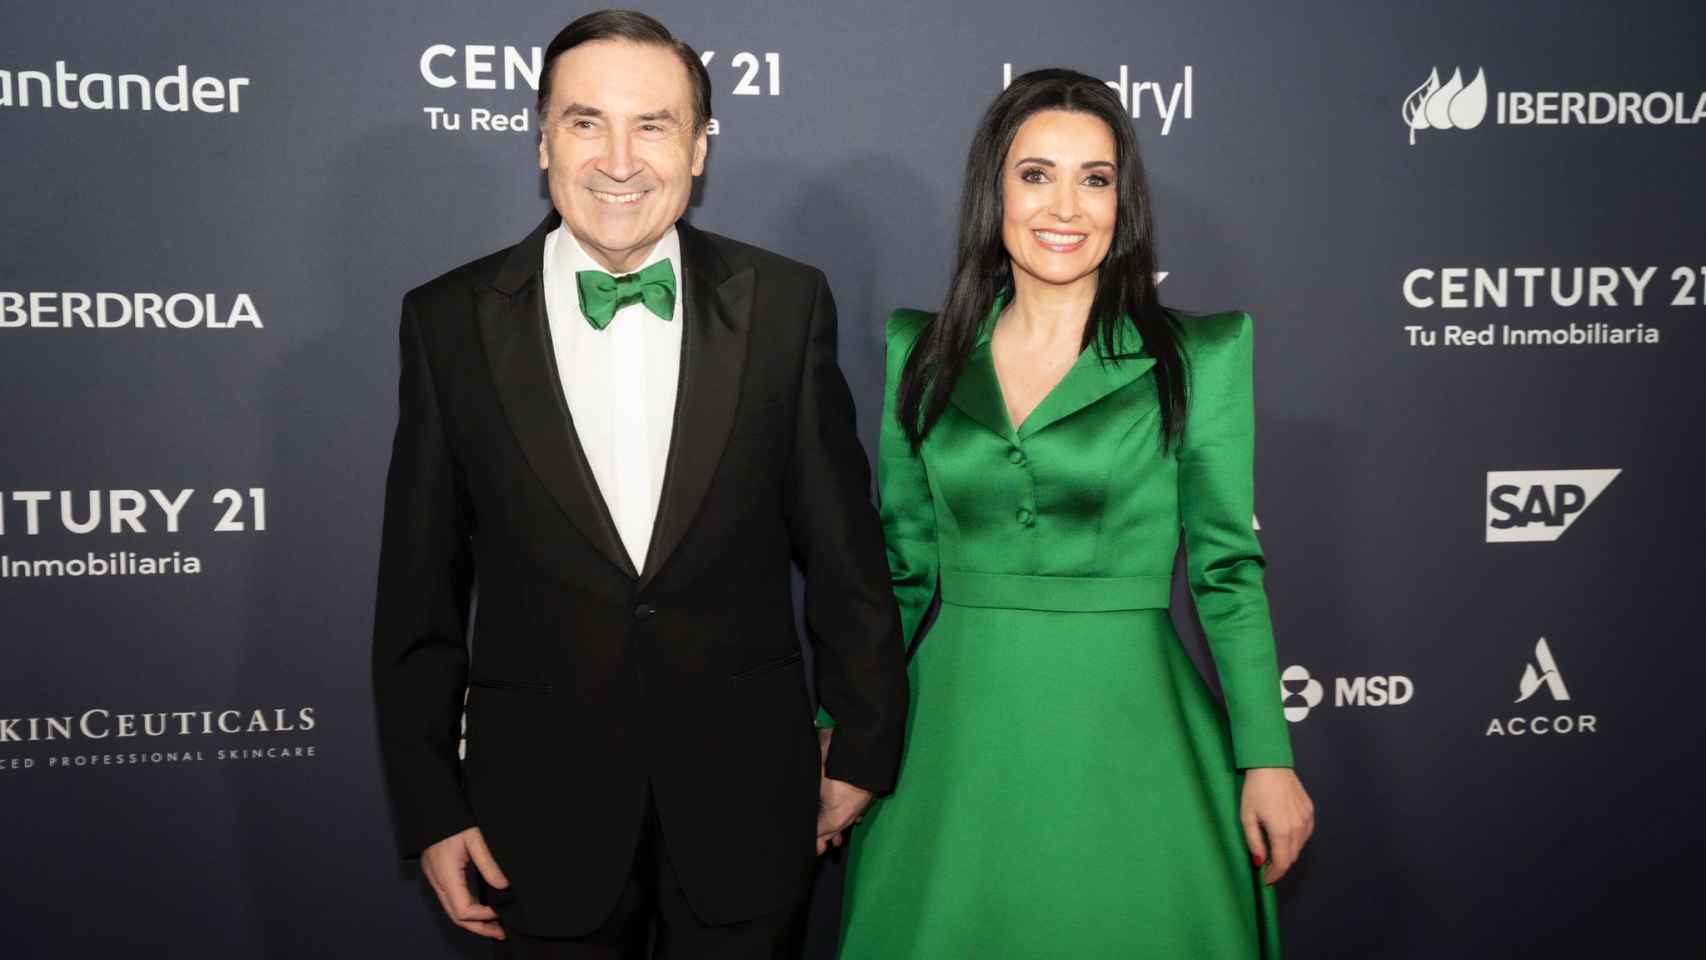 Pedro J. Ramírez y Cruz Sánchez de Lara en la gala de El Español Top 100 Mujeres Líderes. Fotos: Esteban Palazuelos